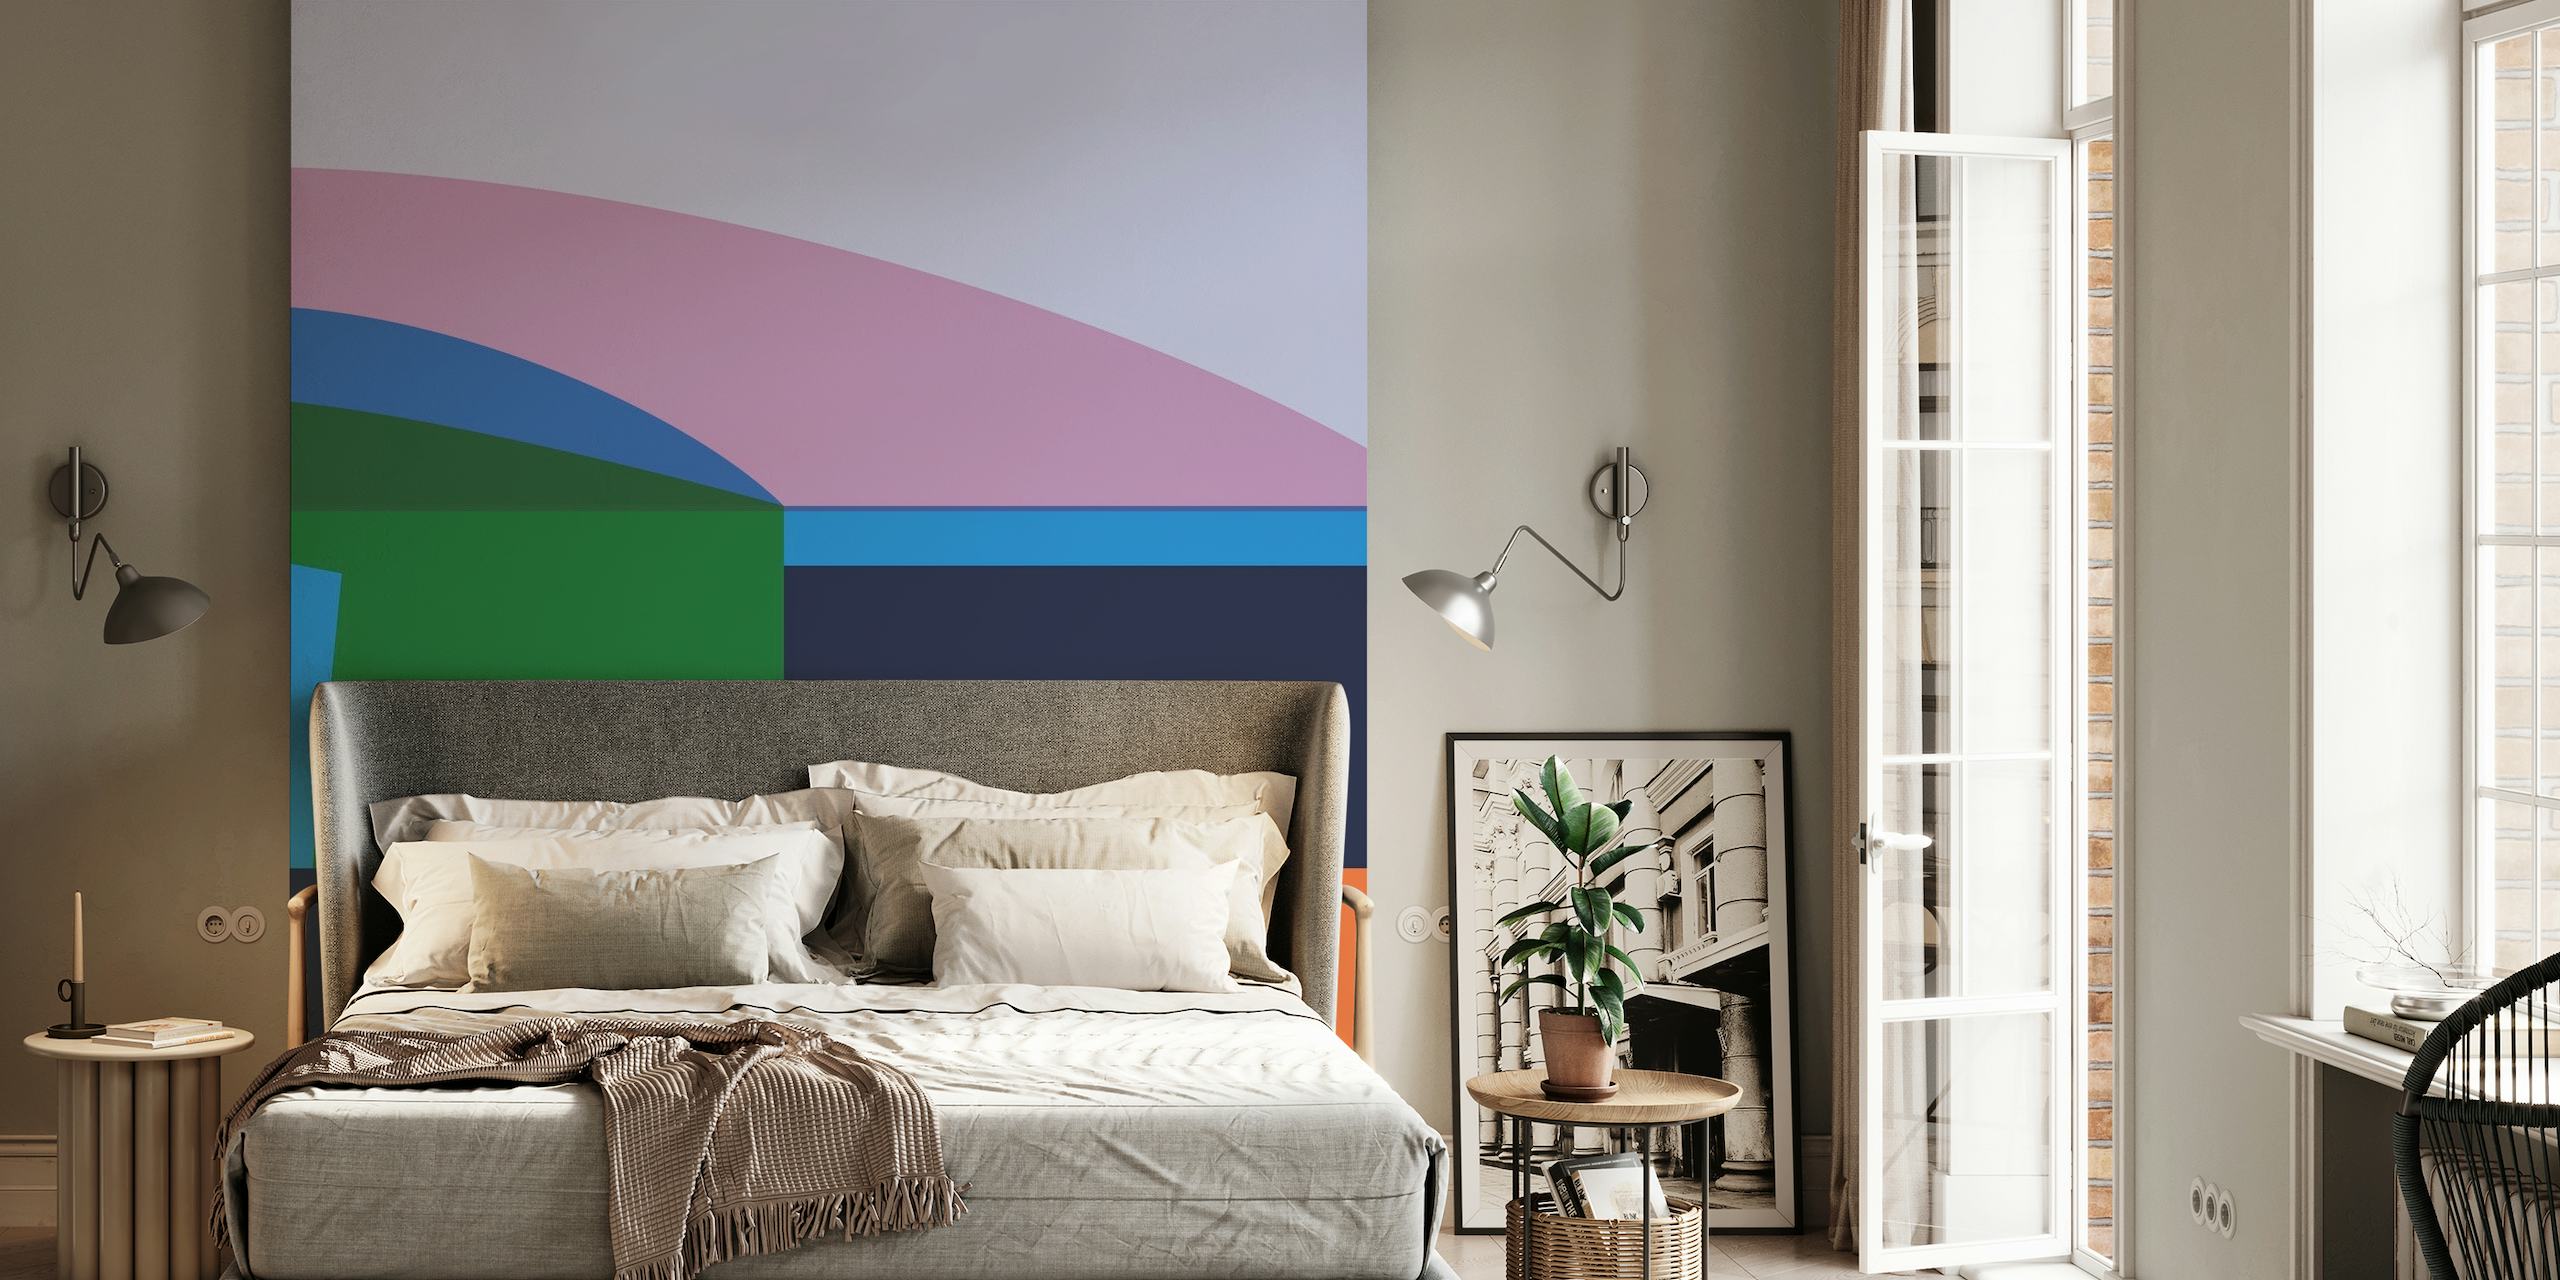 Abstraktní geometrická nástěnná malba s uklidňujícími barevnými bloky v odstínech růžové, zelené, modré a oranžové